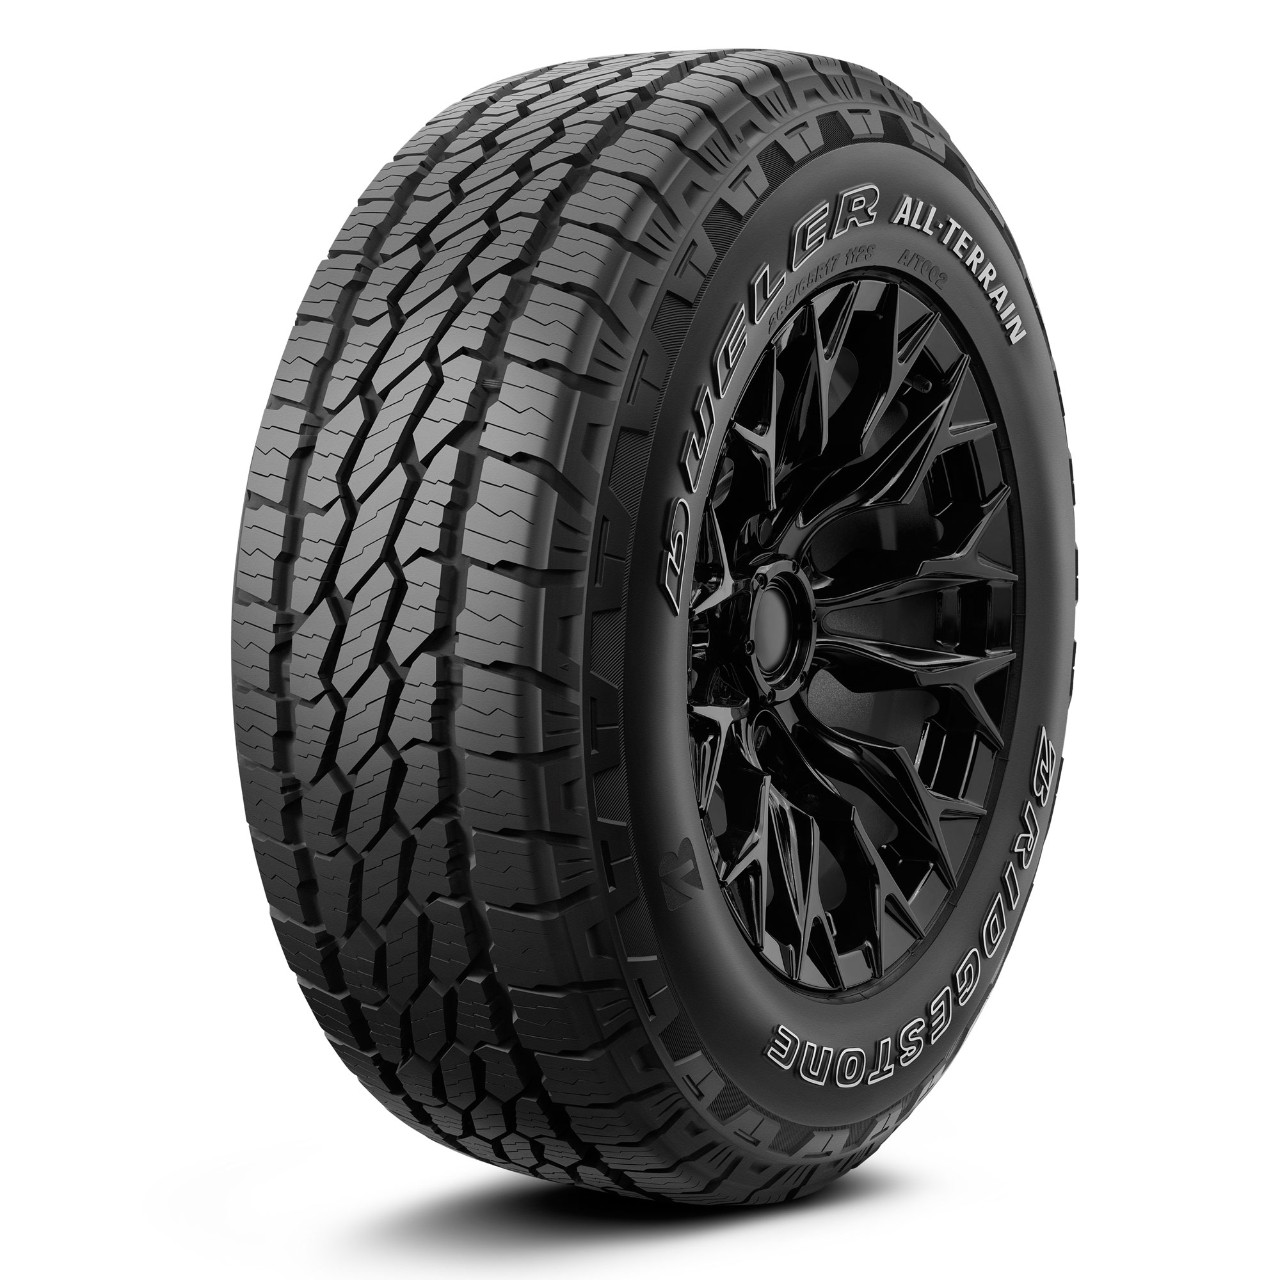 Джипови гуми BRIDGESTONE AT002 215/70 R16 100T